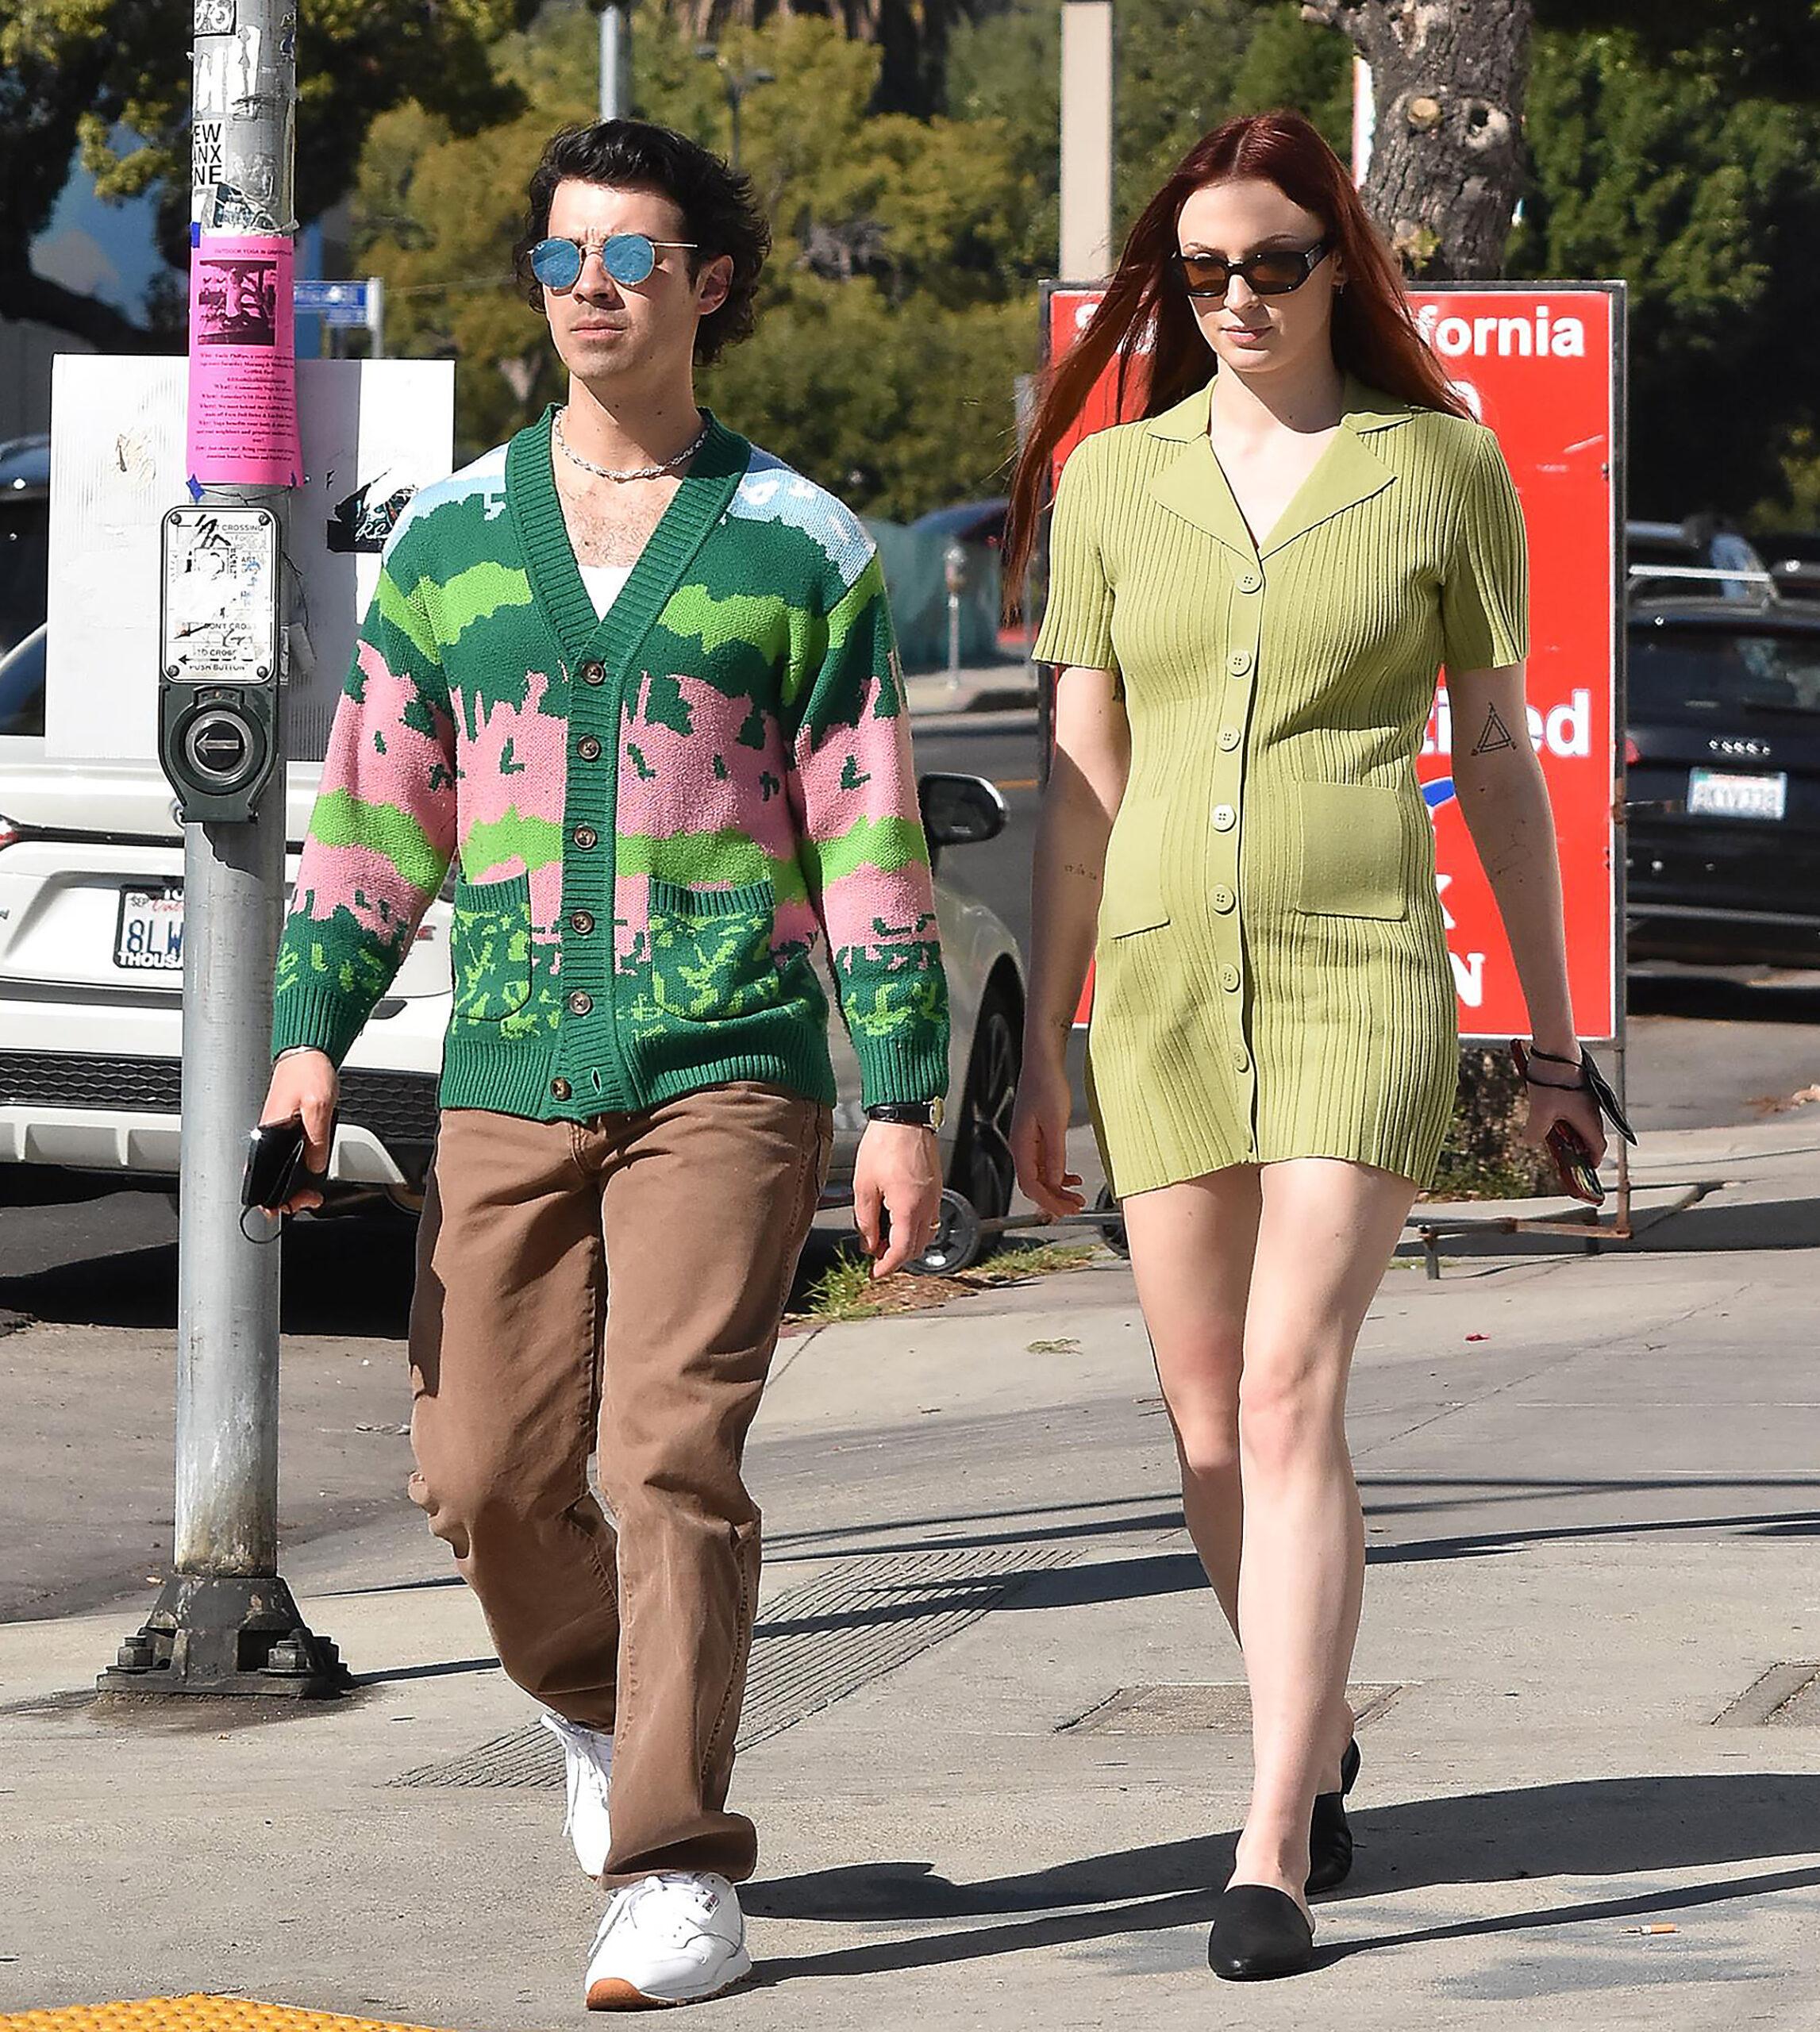 Joe Jonas and wife Sophie Turner strolling in Los Angeles